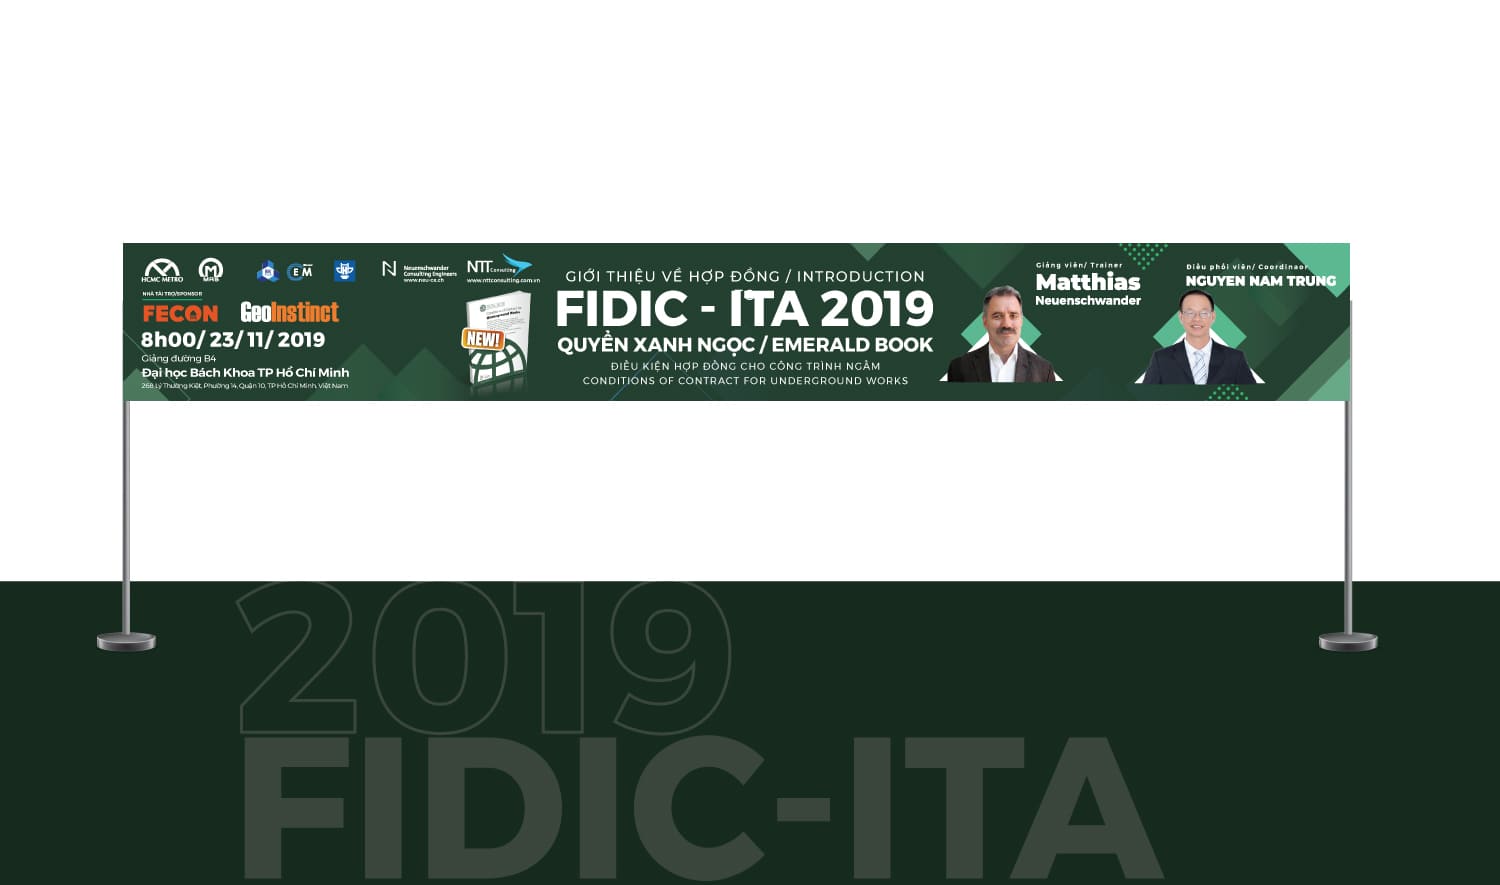 Fidic-Ita 2019 9